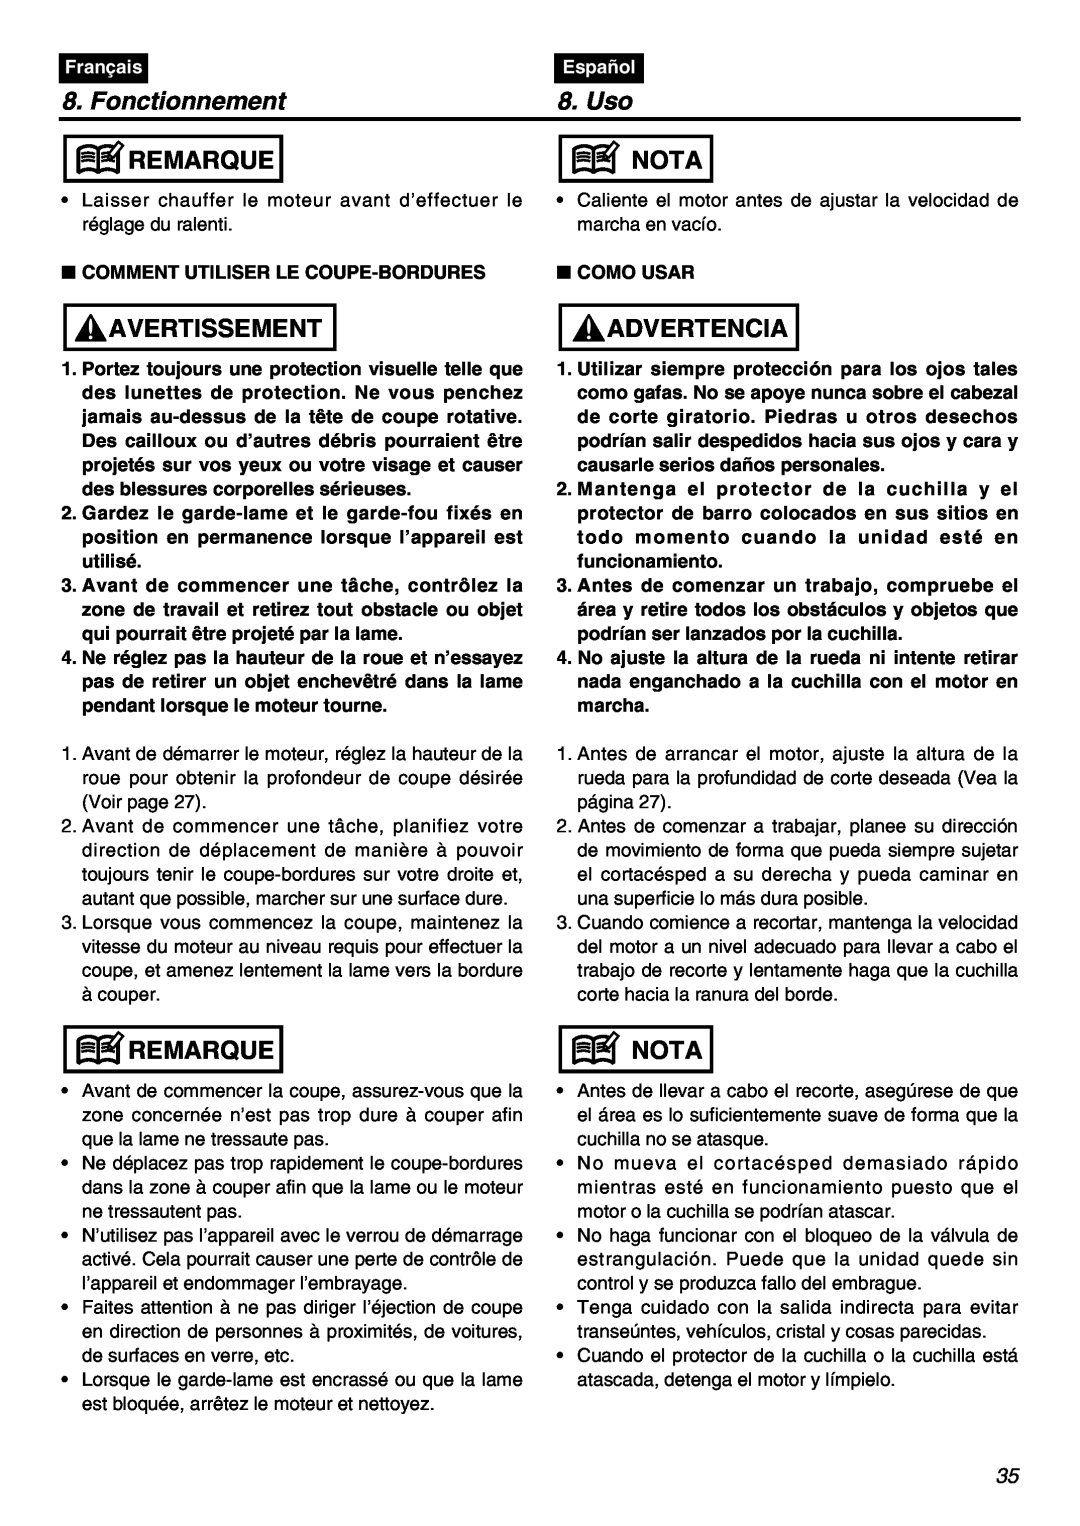 RedMax HEZ2401S, HEZ3001S, HEZ2602S manual Fonctionnement, Uso, Remarque, Nota, Avertissement, Advertencia, Français, Español 